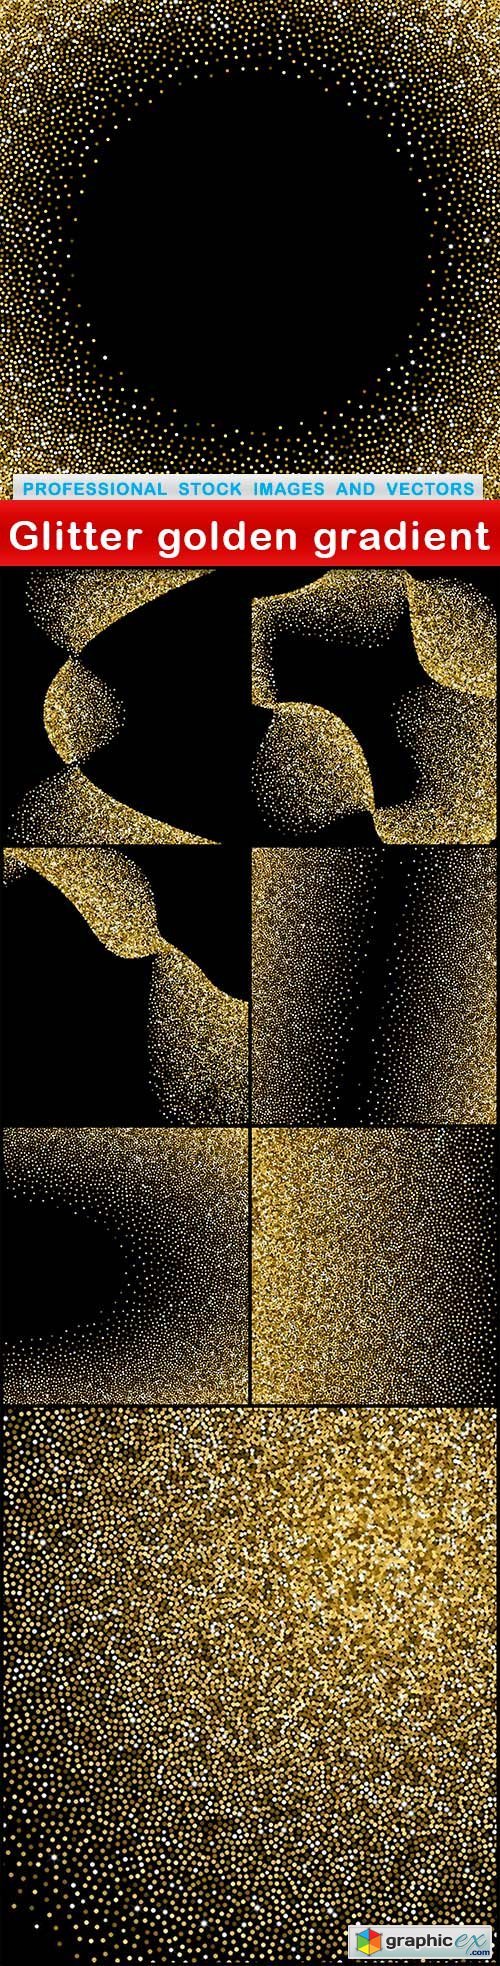 Glitter golden gradient - 8 EPS